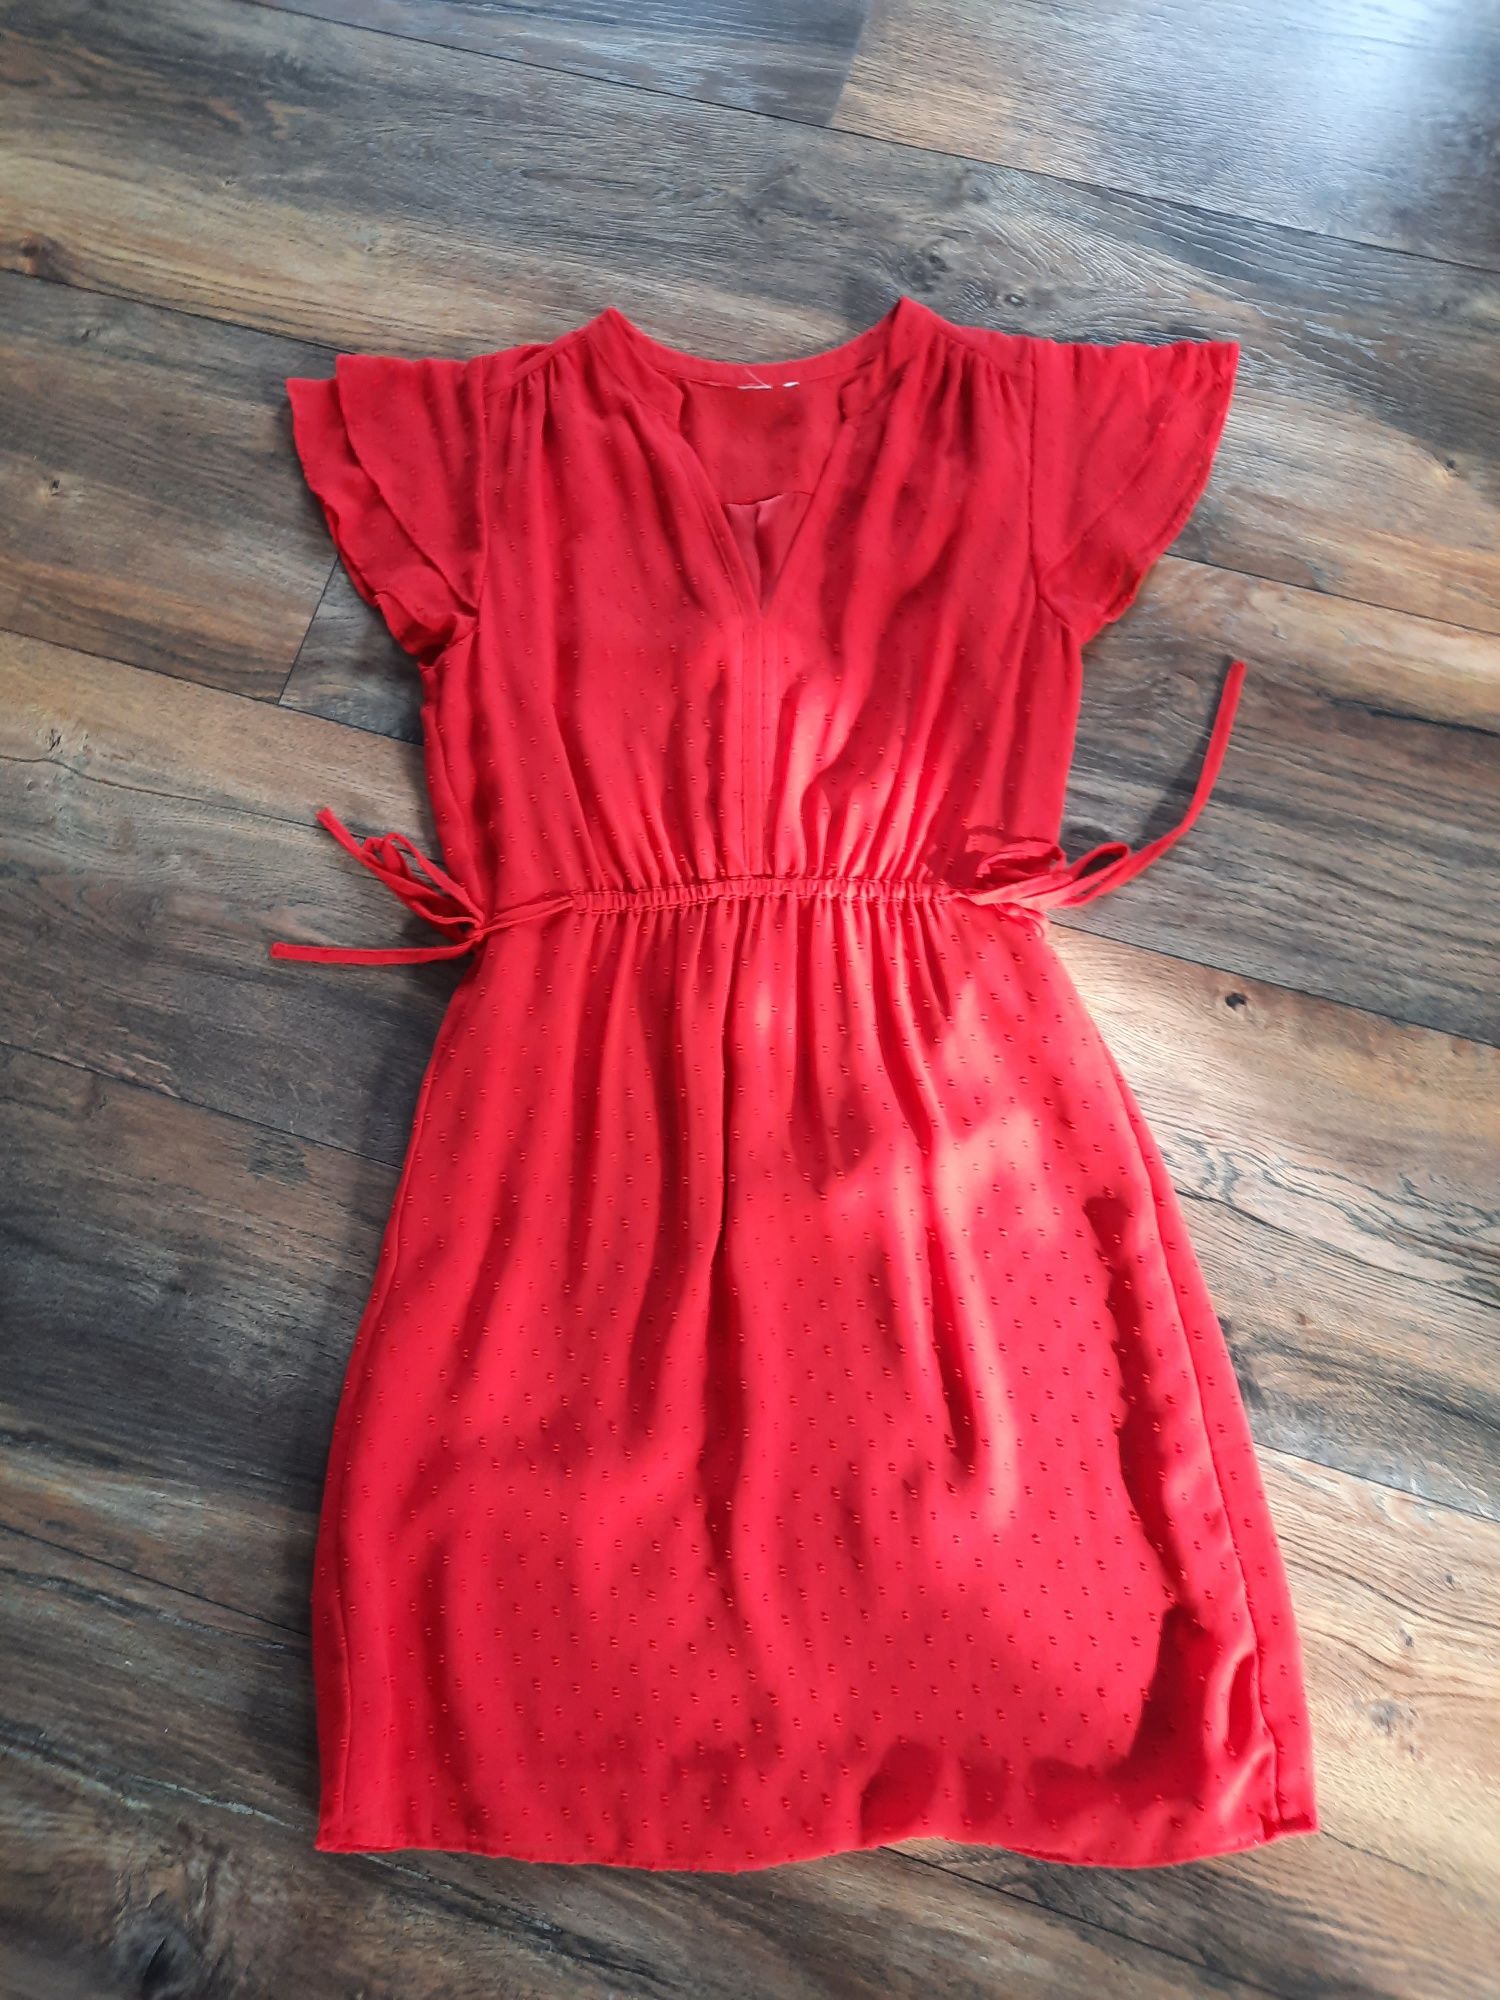 Śliczna czerwona sukienka rozmiar m